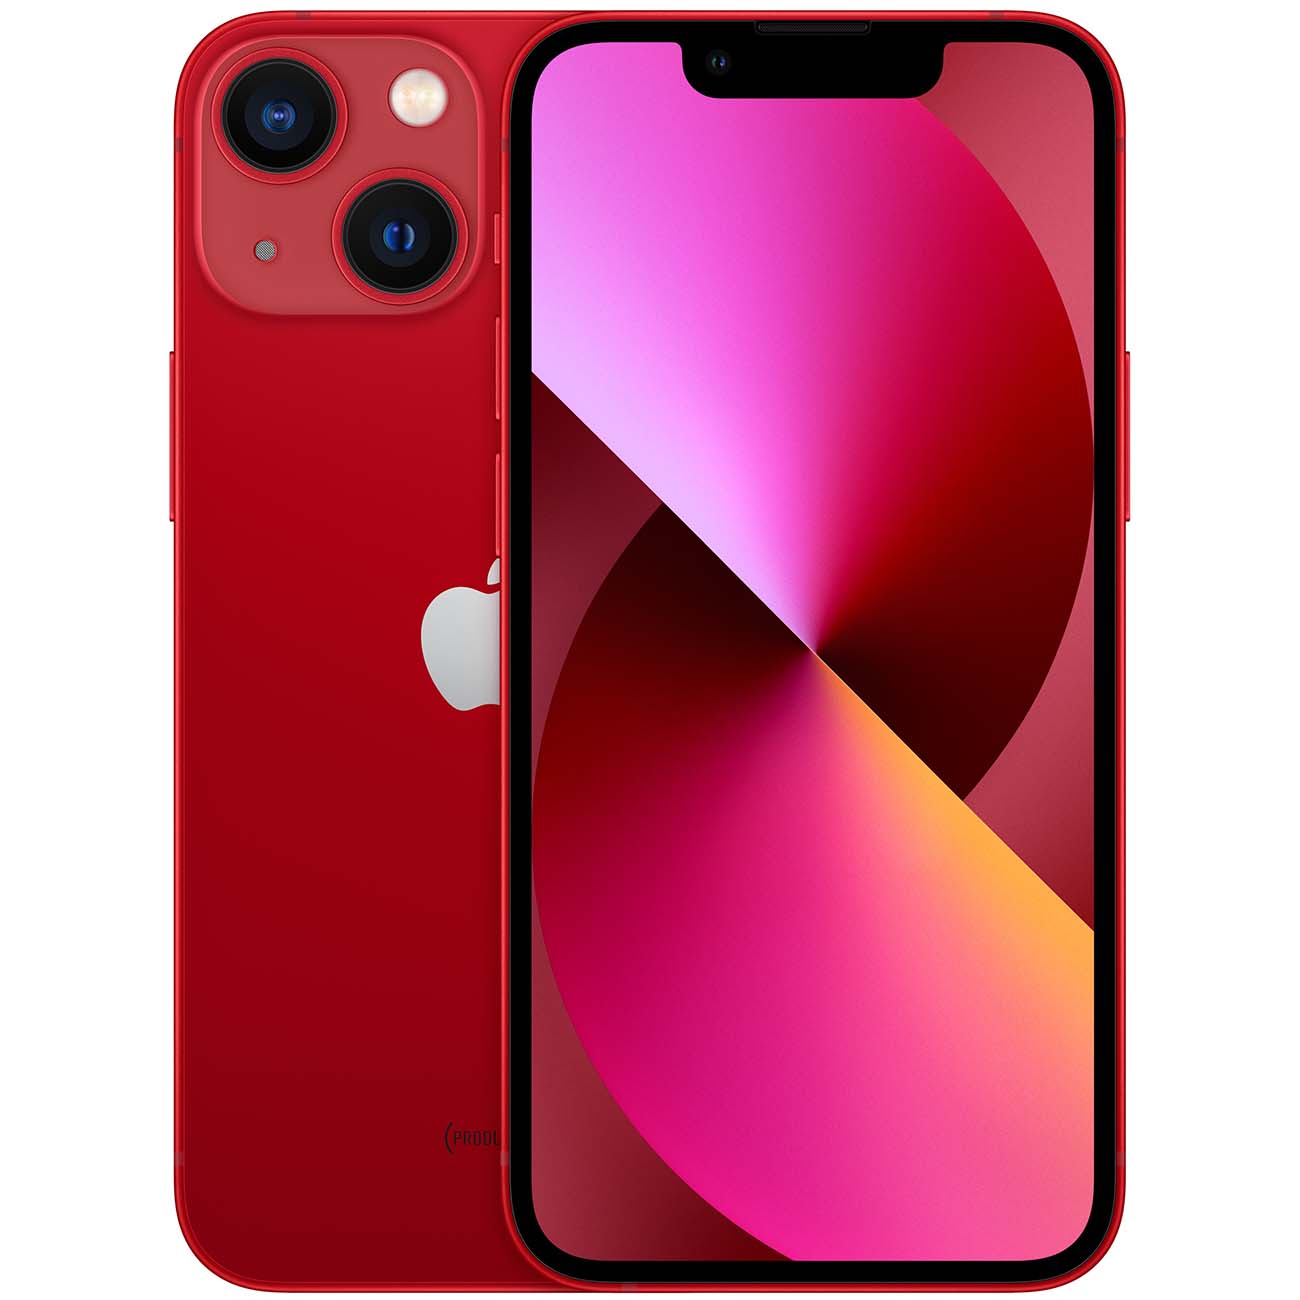 Купить смартфон apple iphone 13 128gb (product) red Apple iPhone 13 в официальном магазине Apple, Samsung, Xiaomi. iPixel.ru Купить, заказ, кредит, рассрочка, отзывы,  характеристики, цена,  фотографии, в подарок.